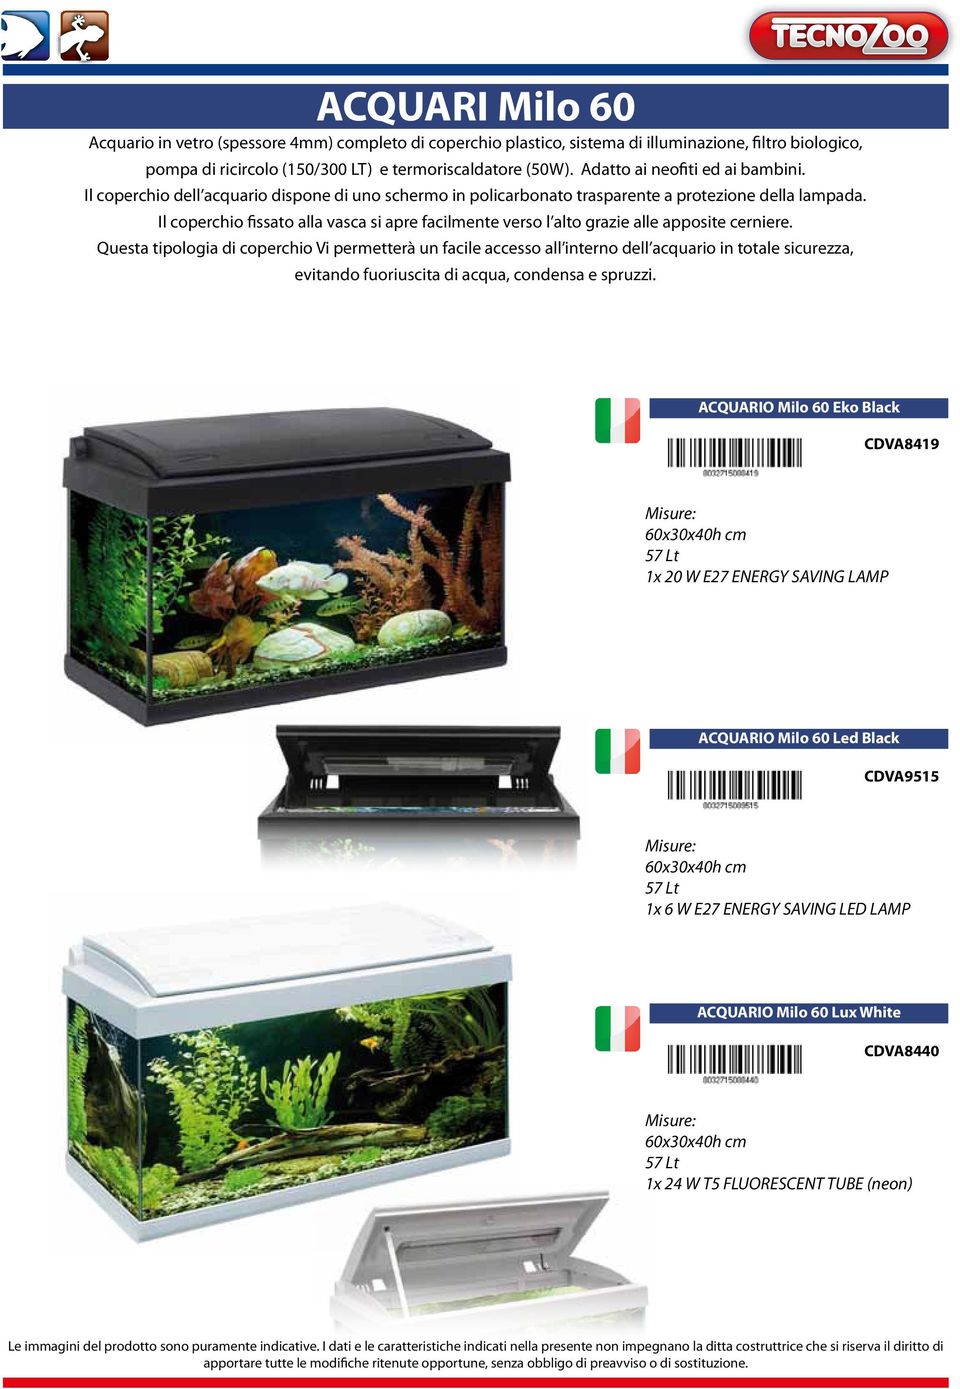 Il coperchio dell acquario dispone di uno schermo in policarbonato trasparente a protezione della lampada.